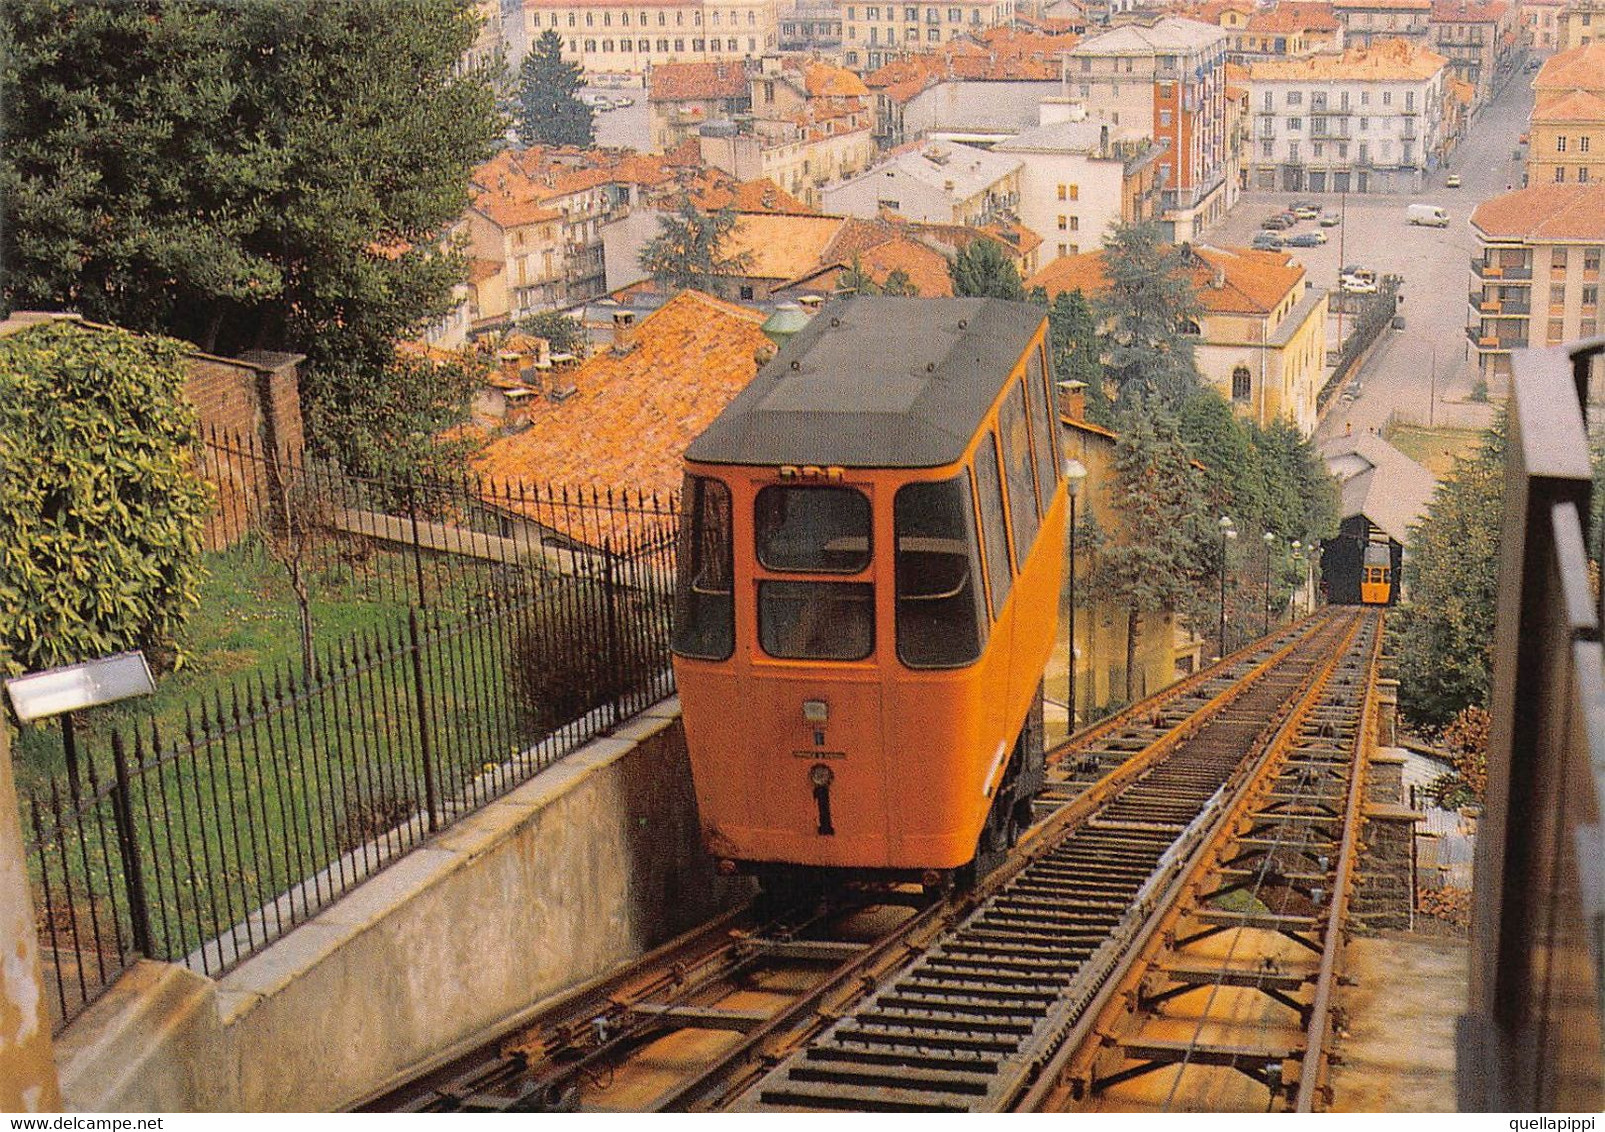 012613 "FUNICOLARE DI BIELLA-VEDUTA DALL'ALTO, STAZIONE DI PIAZZO CON PANORAMA"  CART NON SPED - Funicular Railway